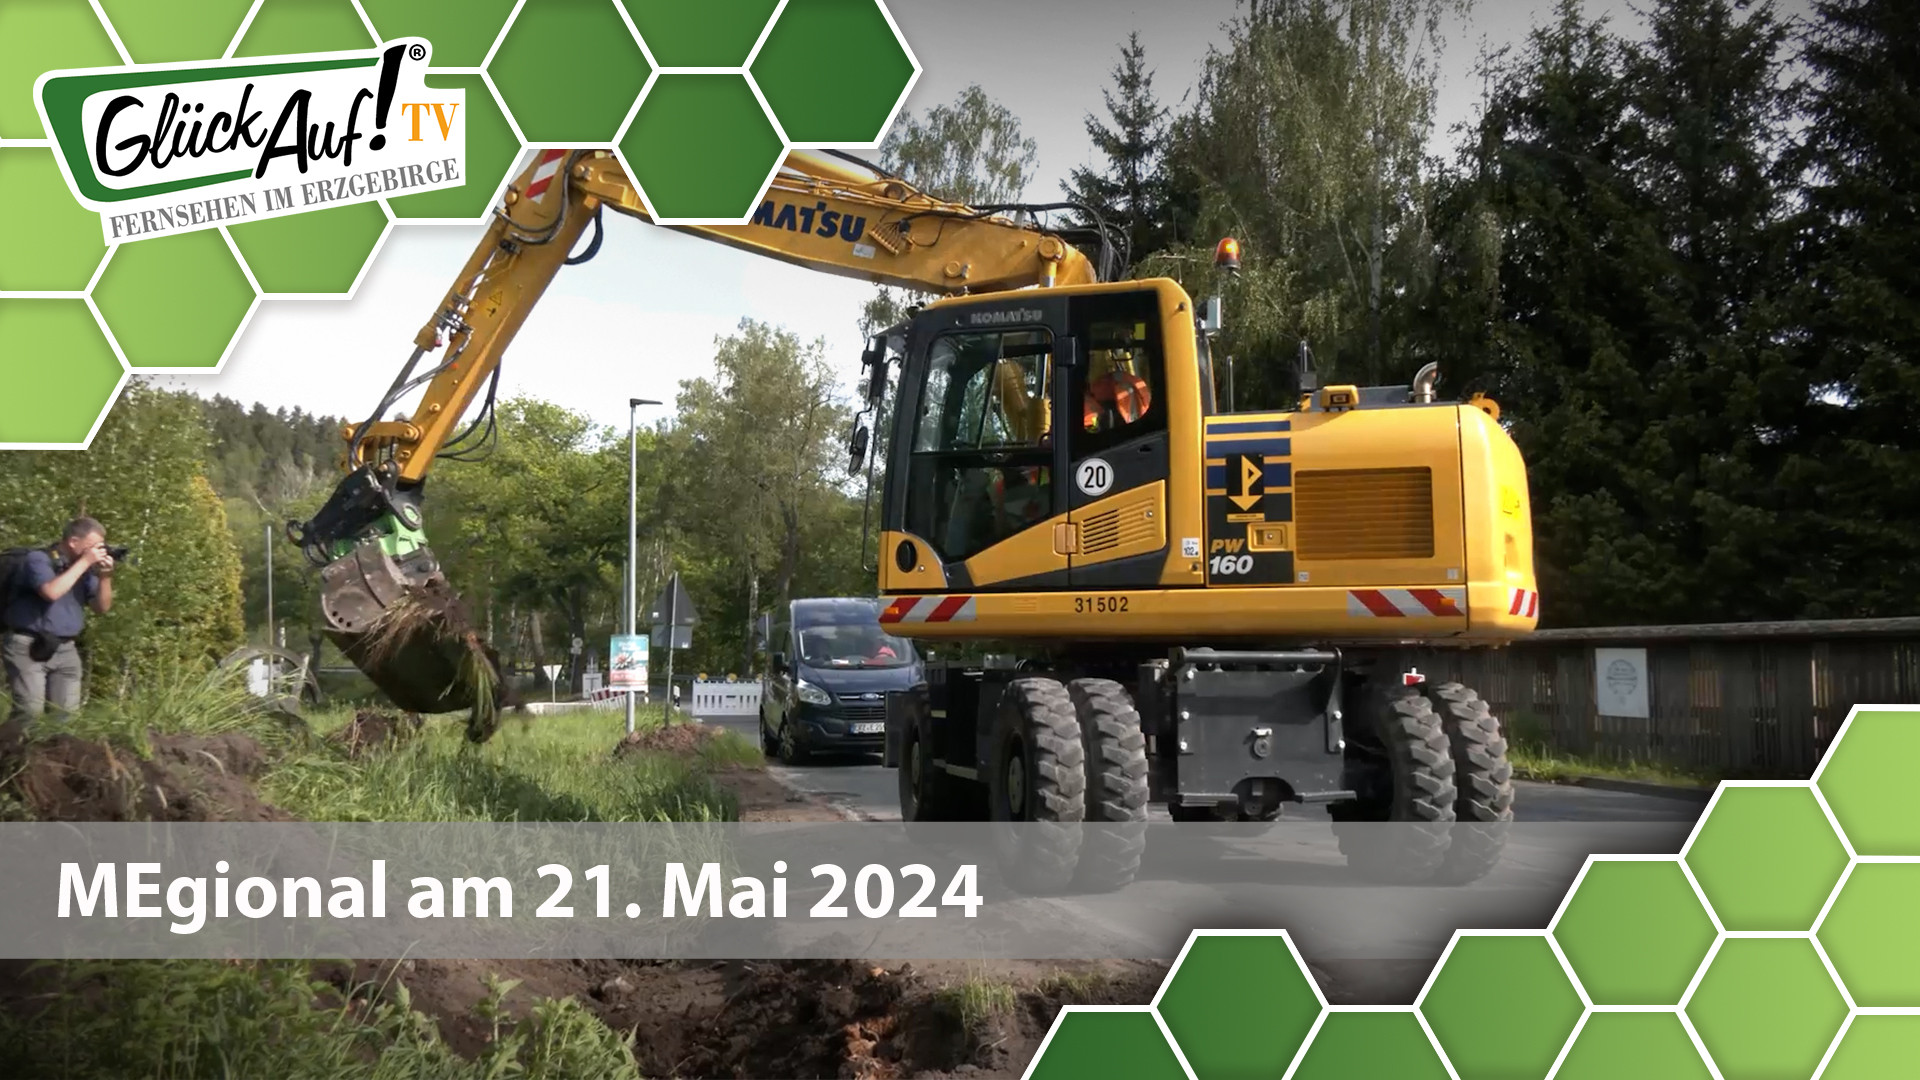 MEgional am 21. Mai 2024 mit dem Beginn Straßenbau in Blumenau